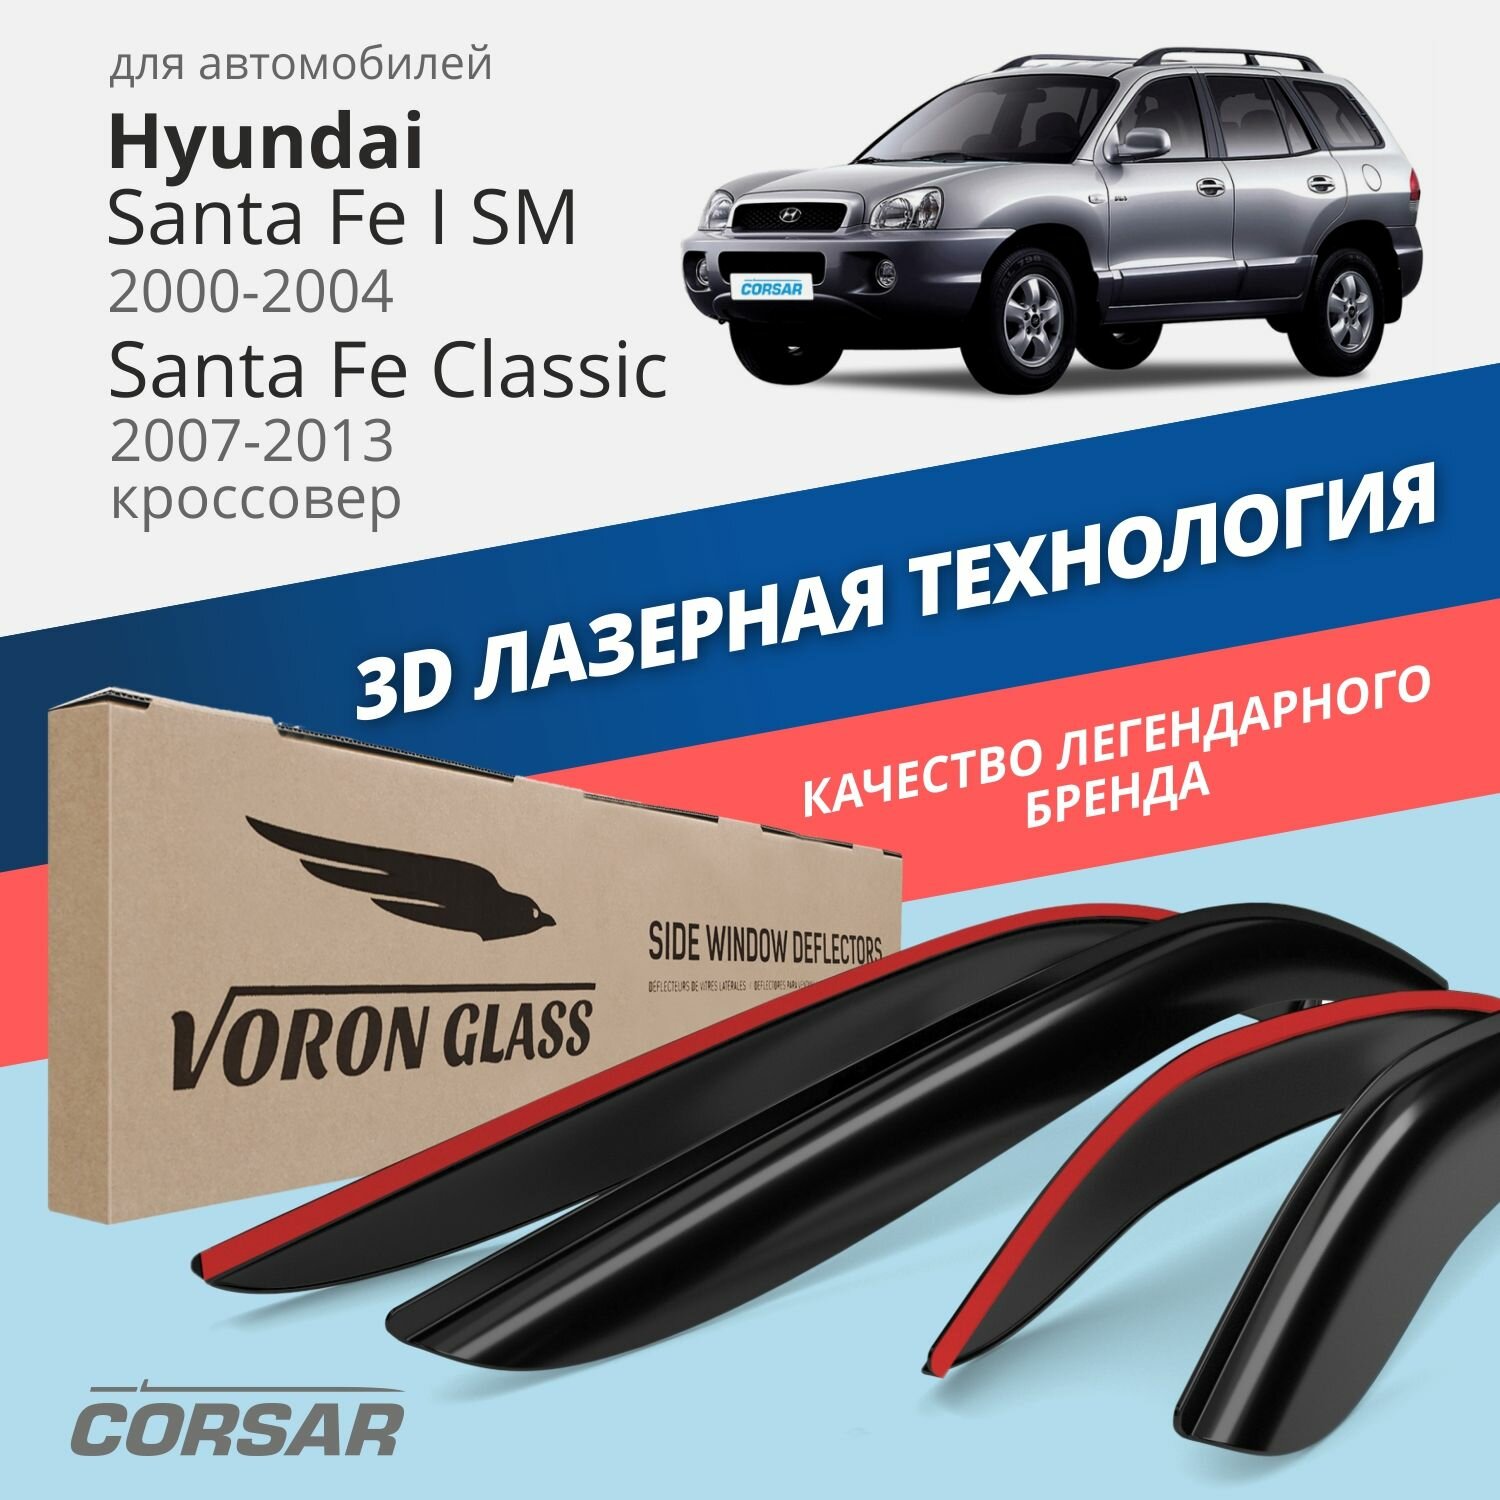 Дефлекторы окон Voron Glass серия Corsar для Hyundai Santa Fe I (SM) 2000-2004/Santa Fe Classic 2007-2013 накладные 4 шт.